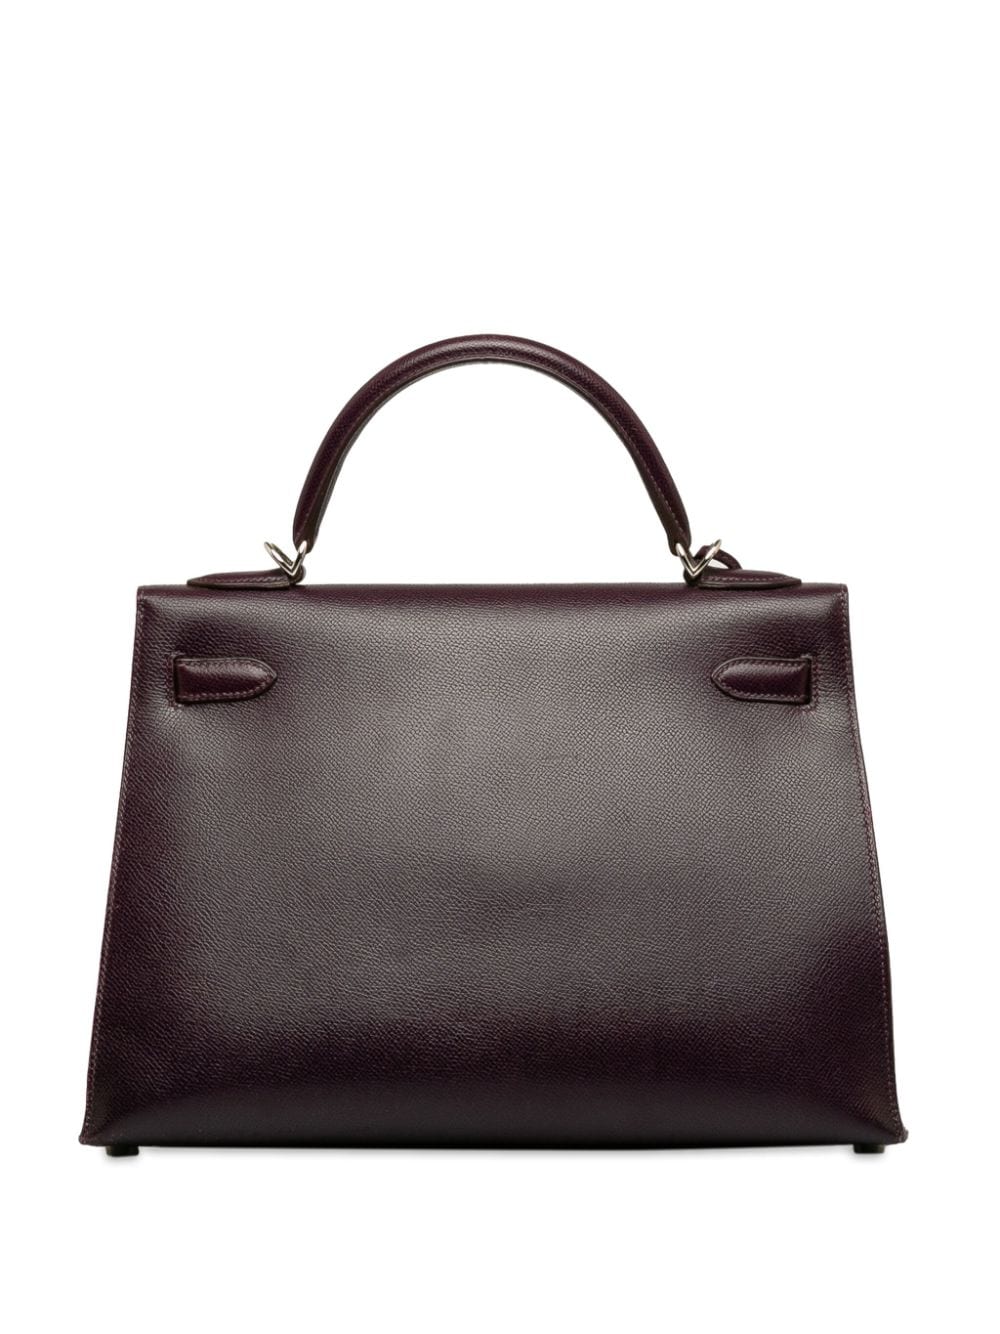 Hermès Pre-Owned 2002 Kelly Sellier 32 two-way handbag - Paars